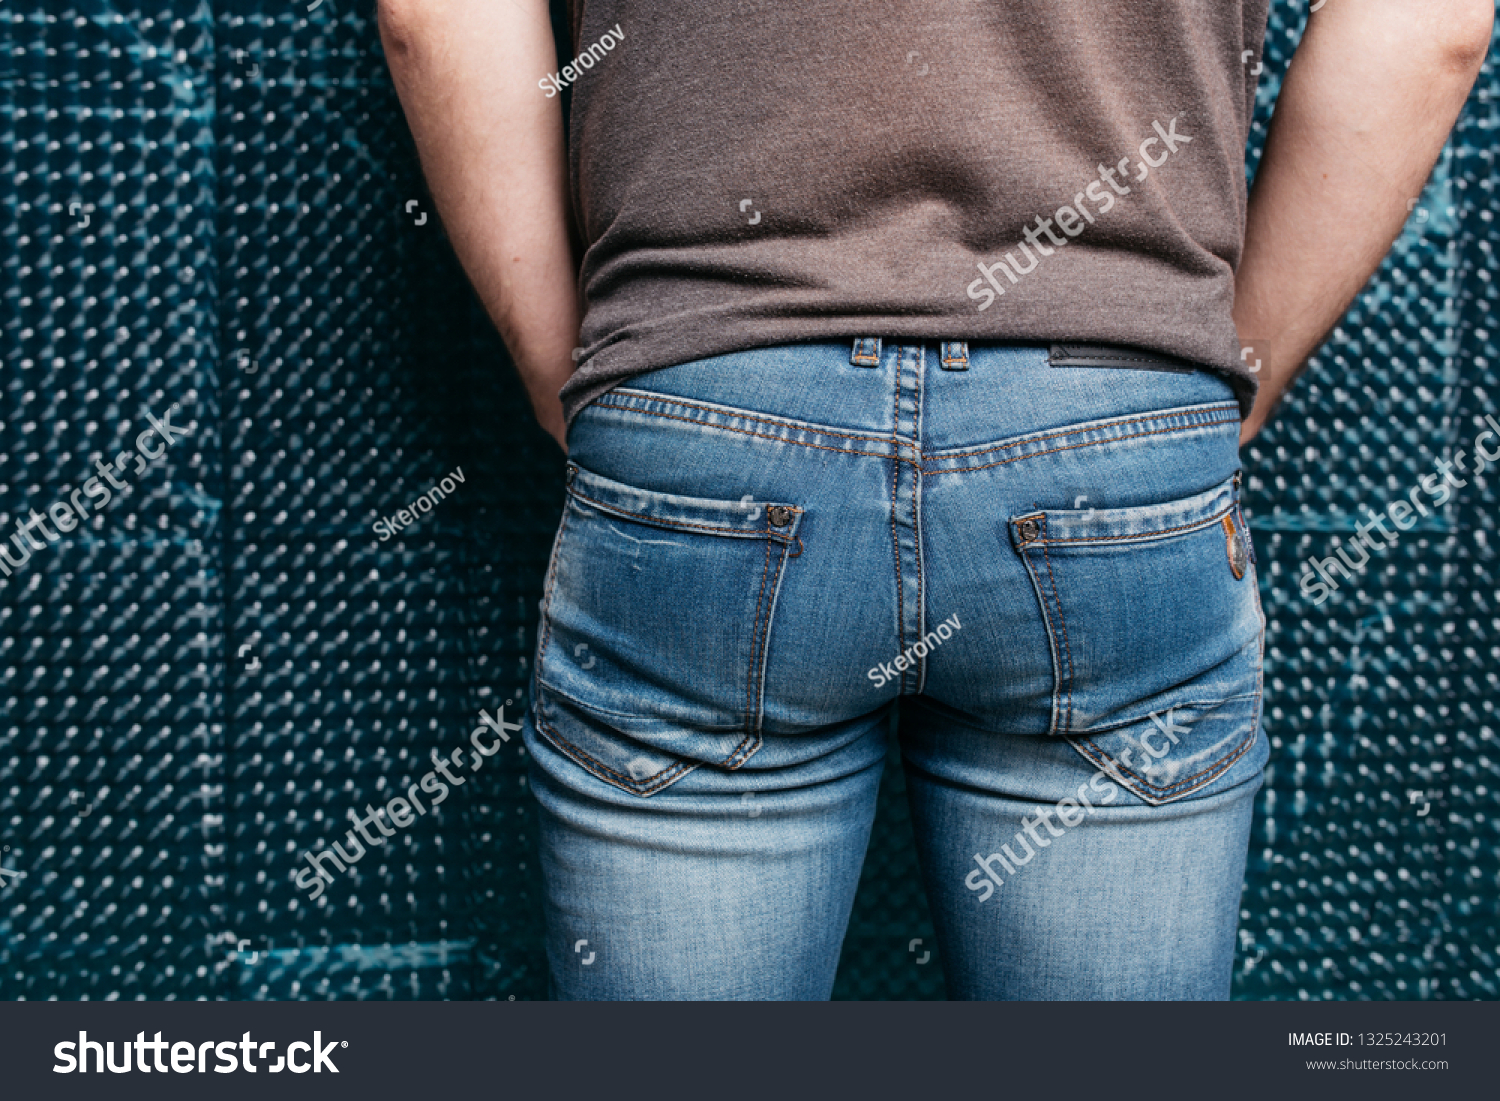 Man Tight Jeans Sports Ass Photo 1325243201 | Shutterstock